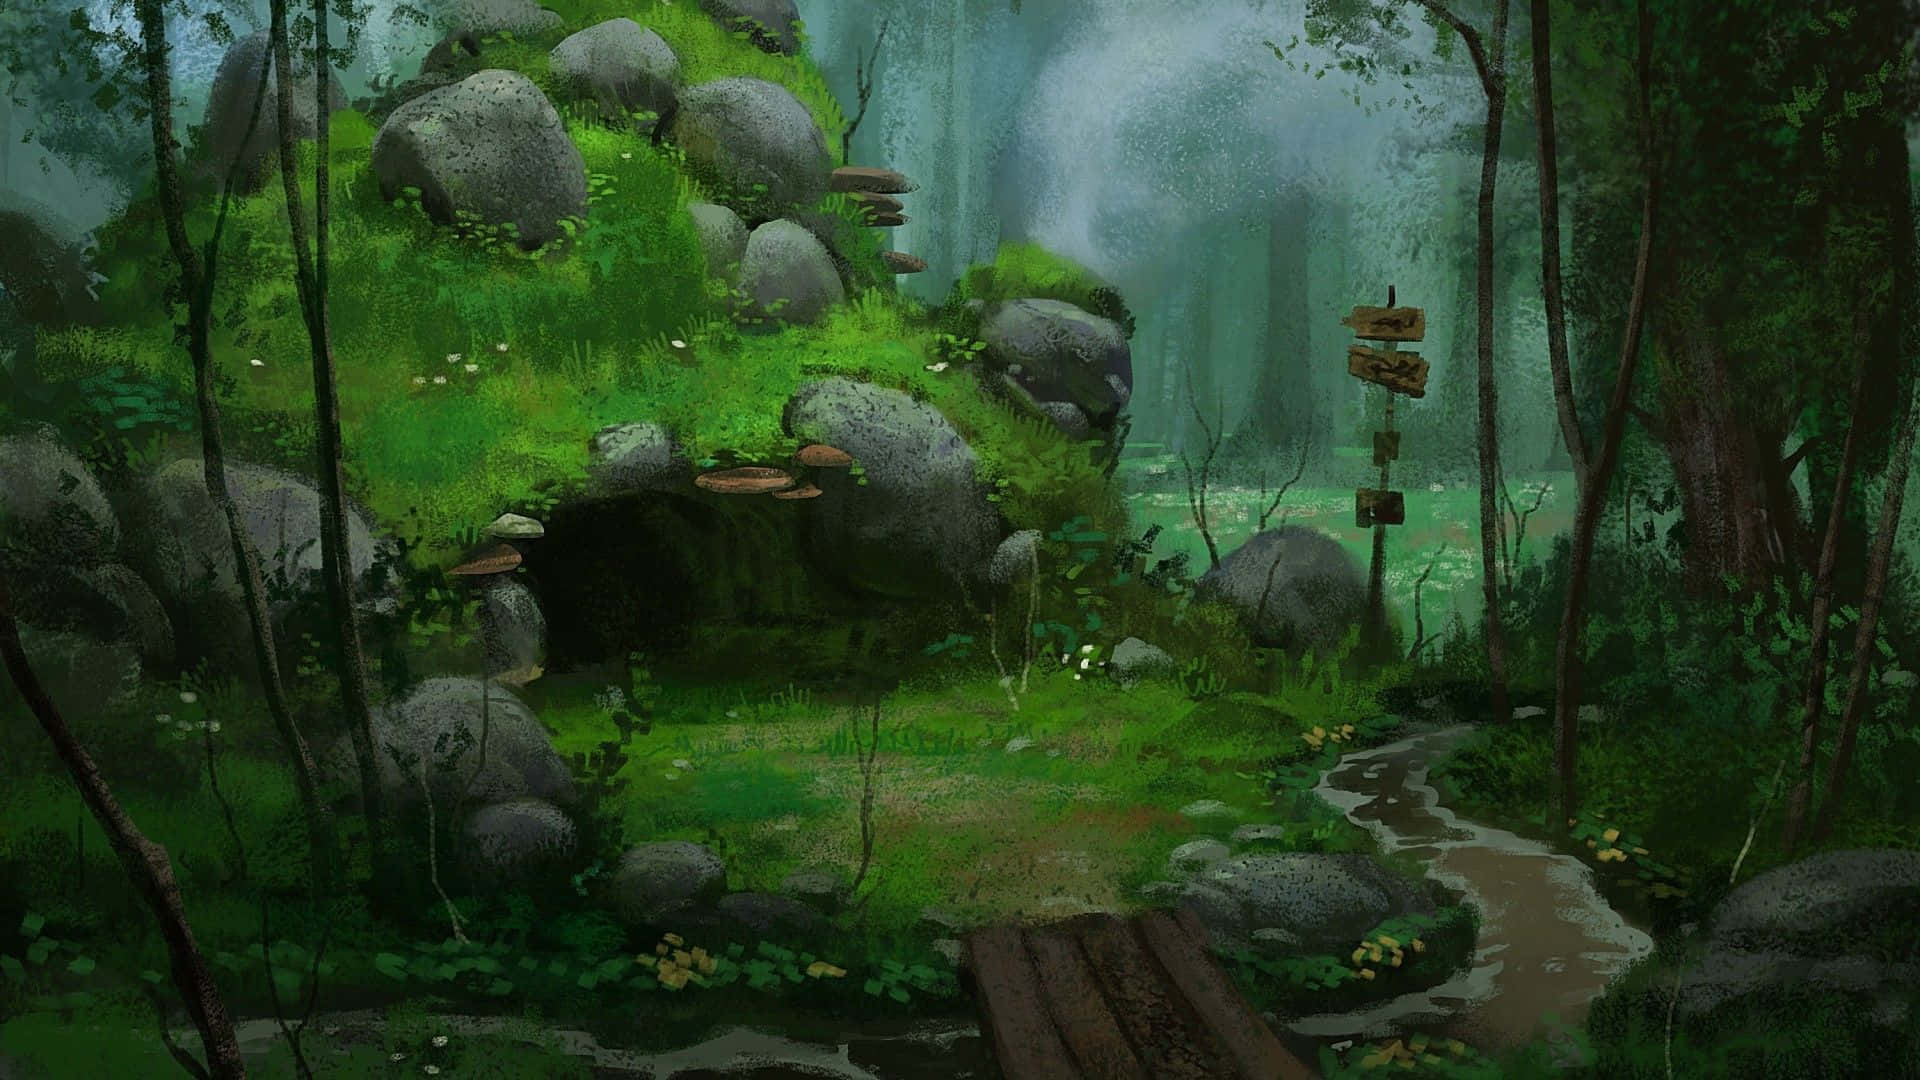 Gå tabt i skønheden af denne Anime-inspirerede skov. Wallpaper